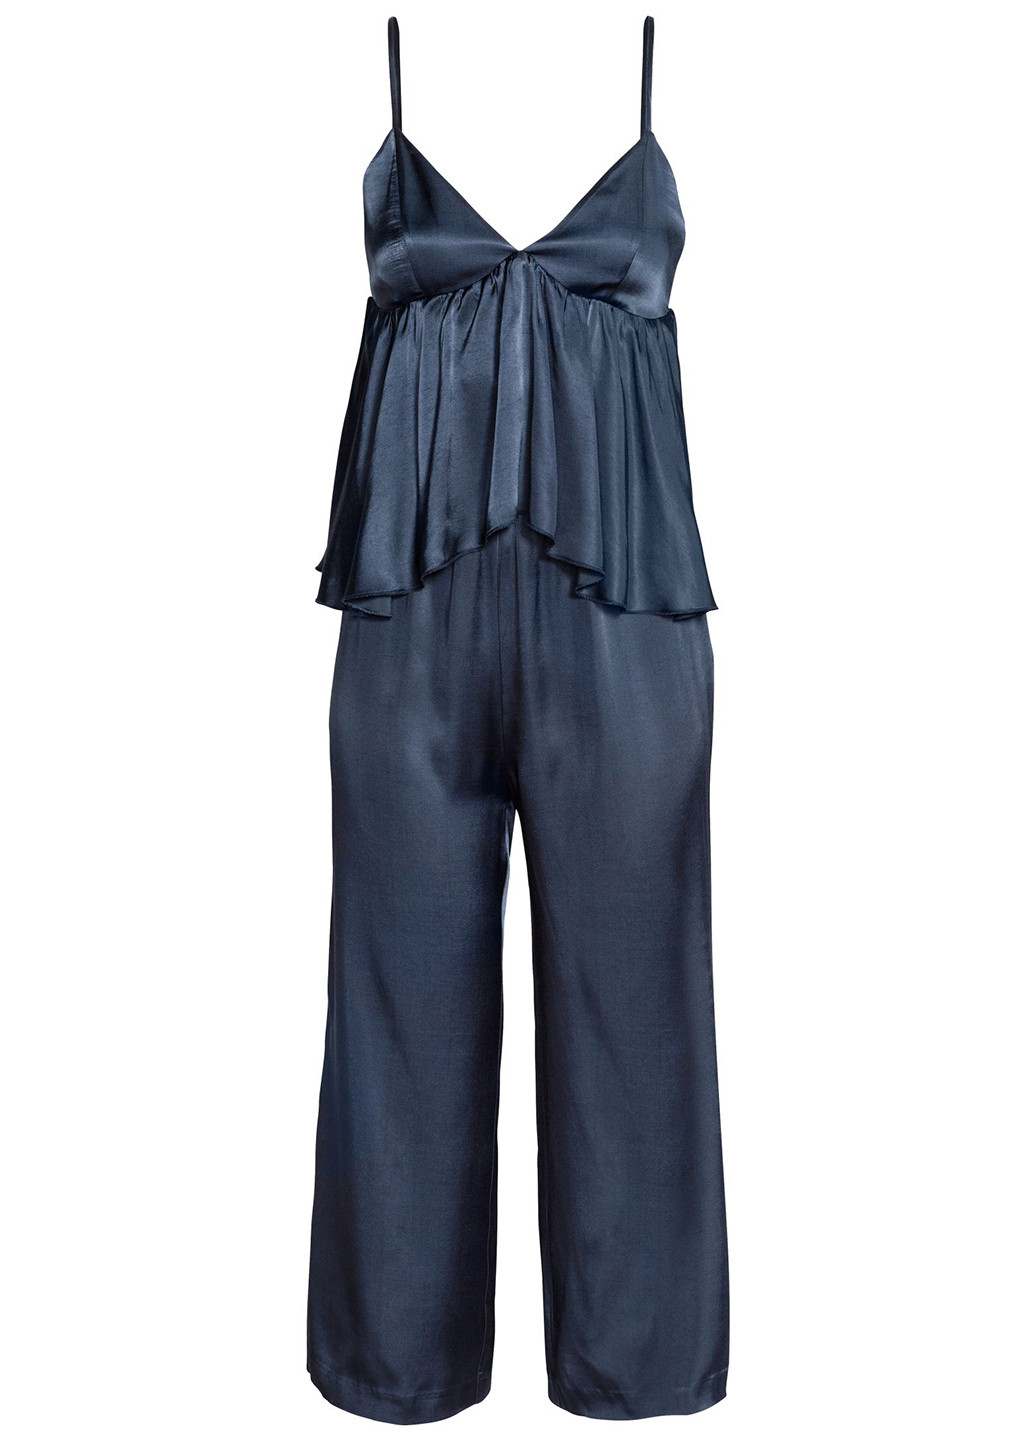 Комбінезон H&M комбінезон-брюки однотонний темно-синій коктейльний віскоза, атлас